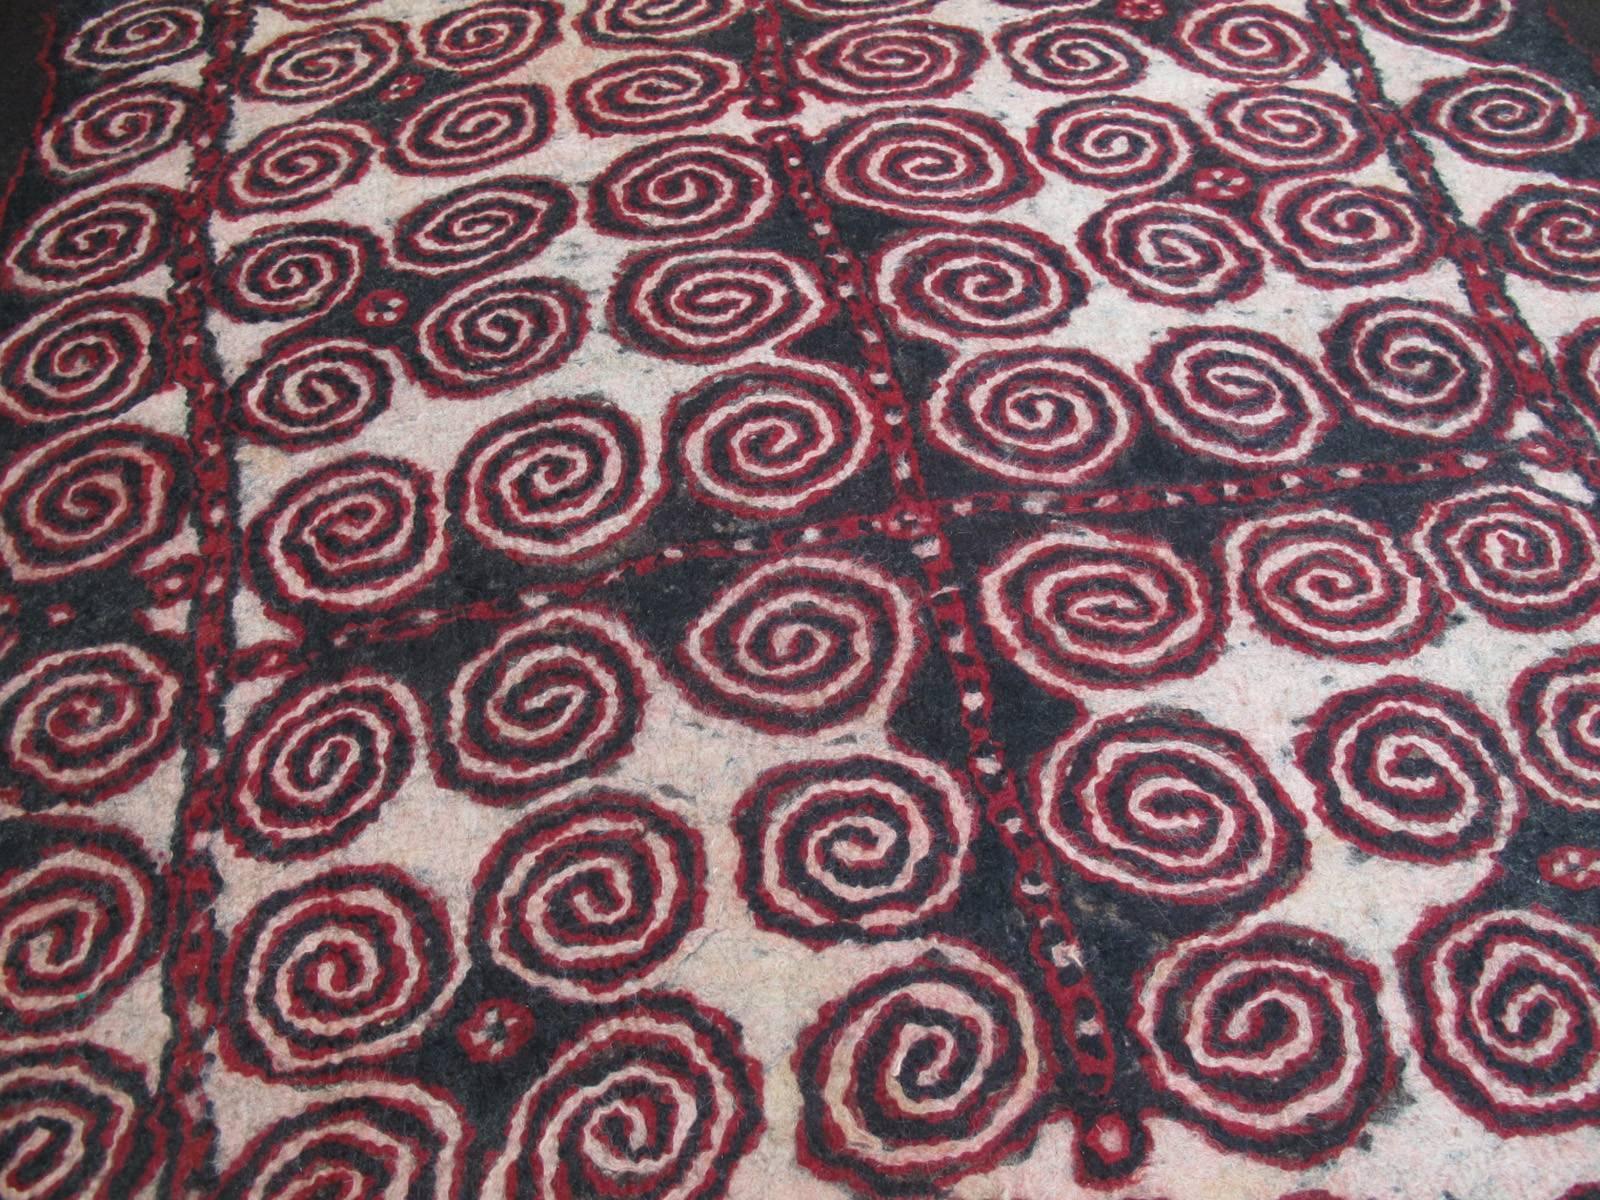 Tribal Central Asian Felt Carpet